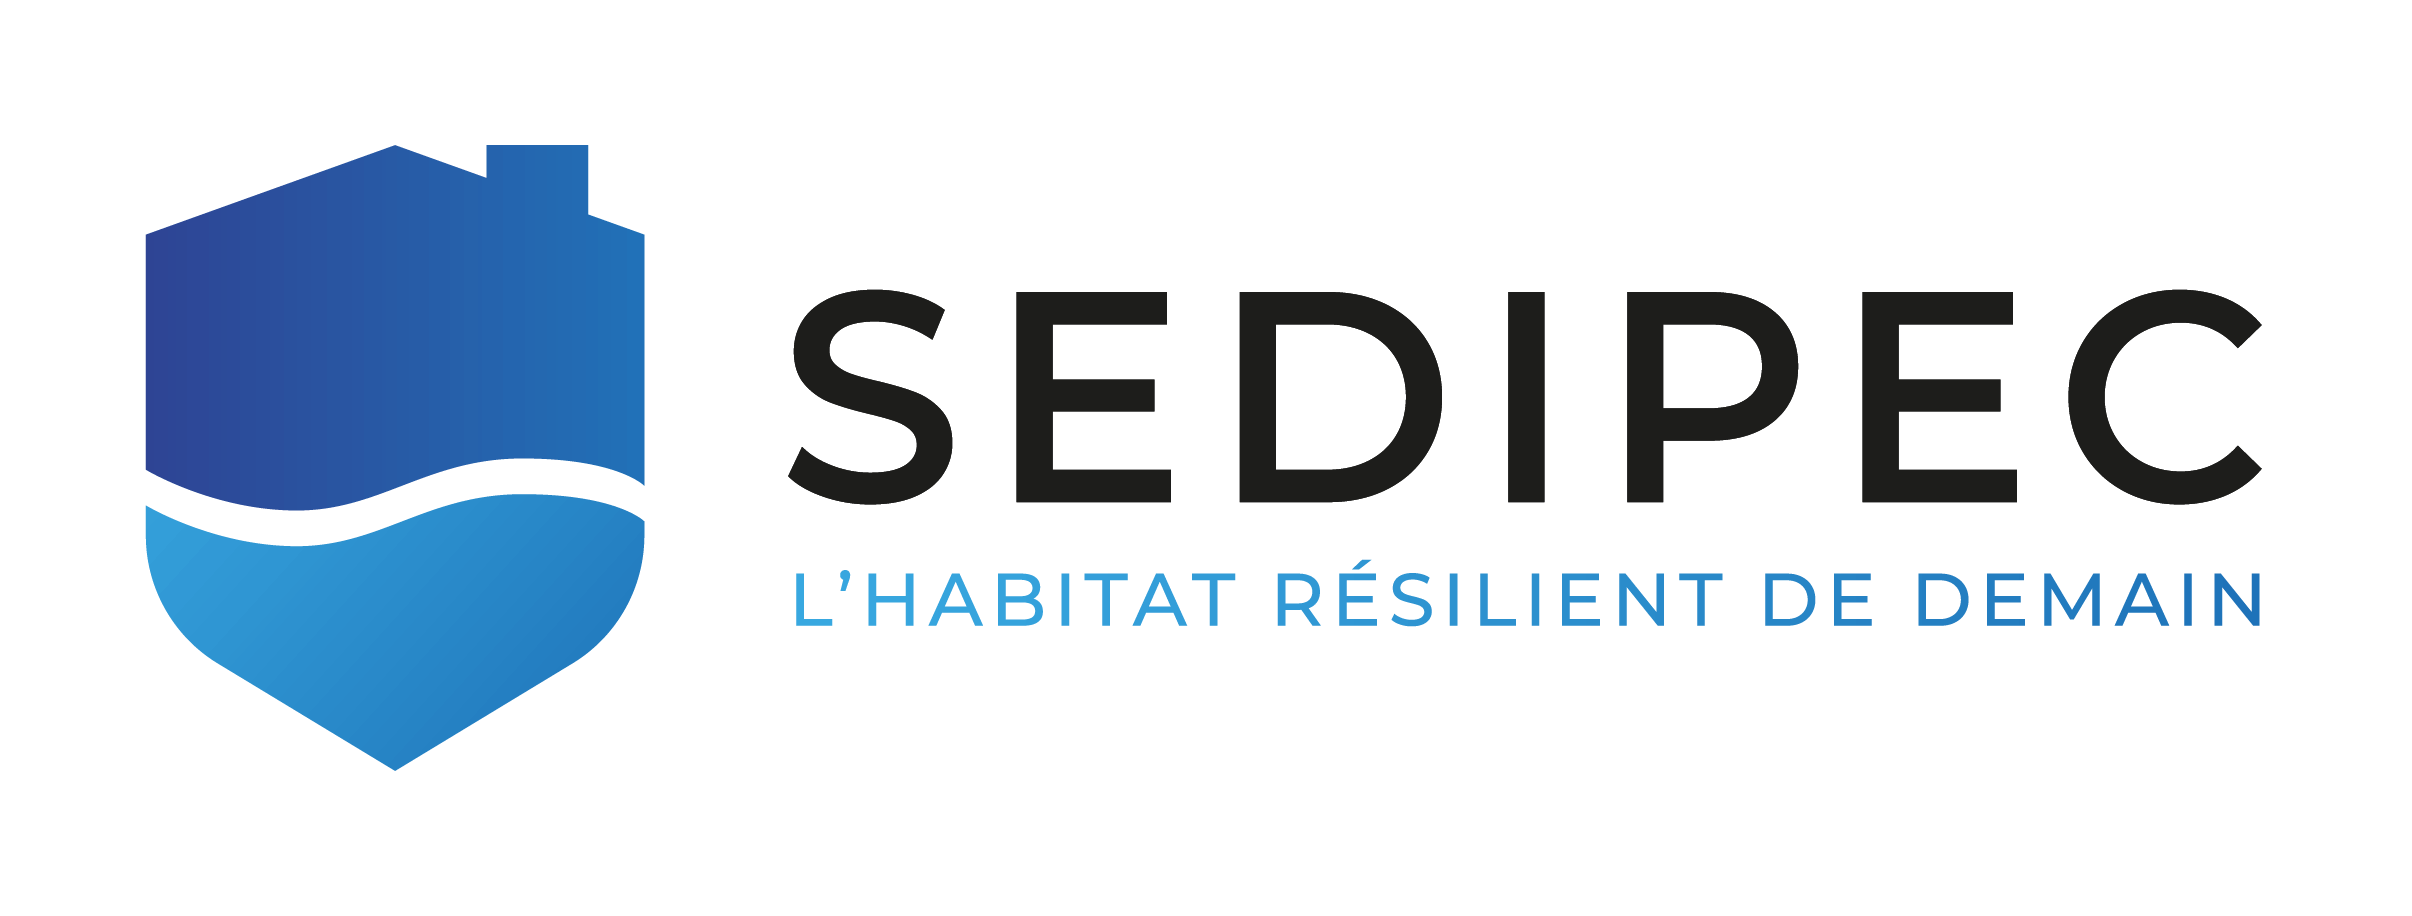 Logo entreprise SEDIPEC qui propose des solutions anti-inondation